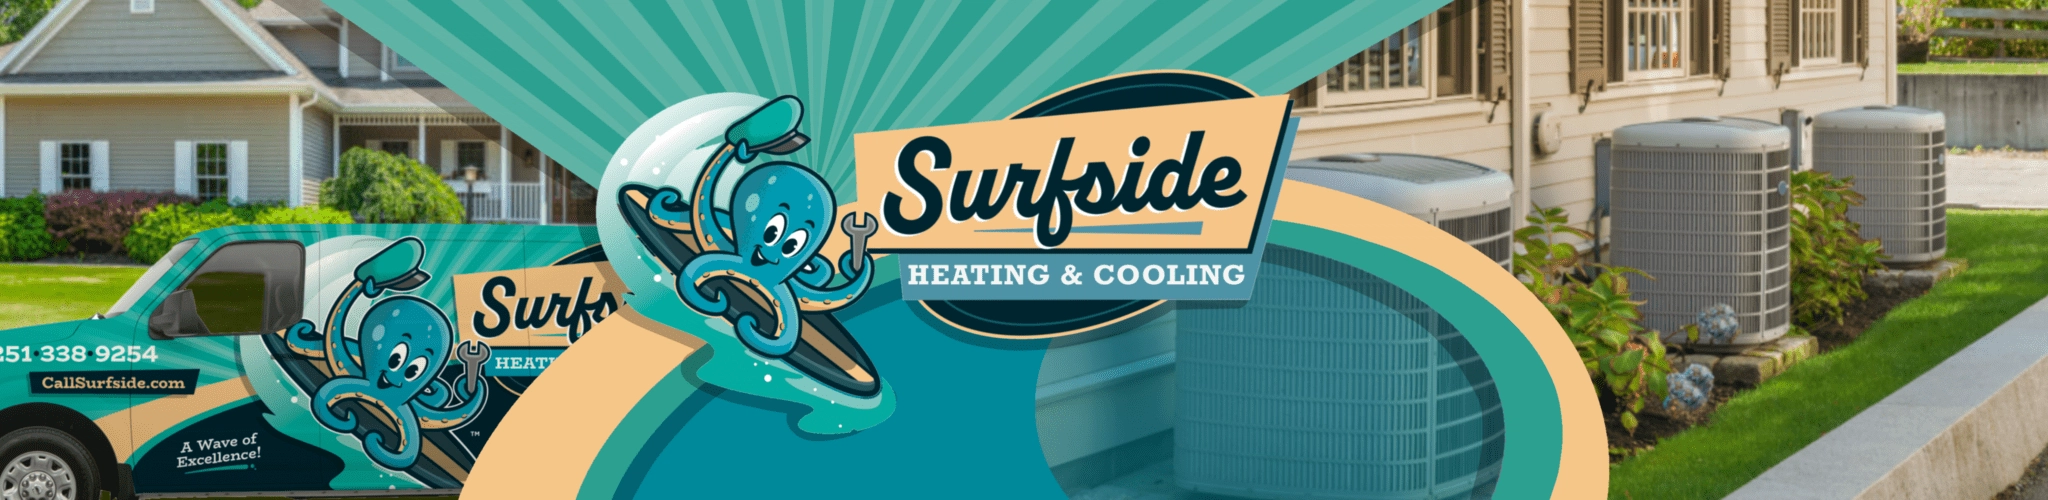 Surfside Heating & Cooling Logo